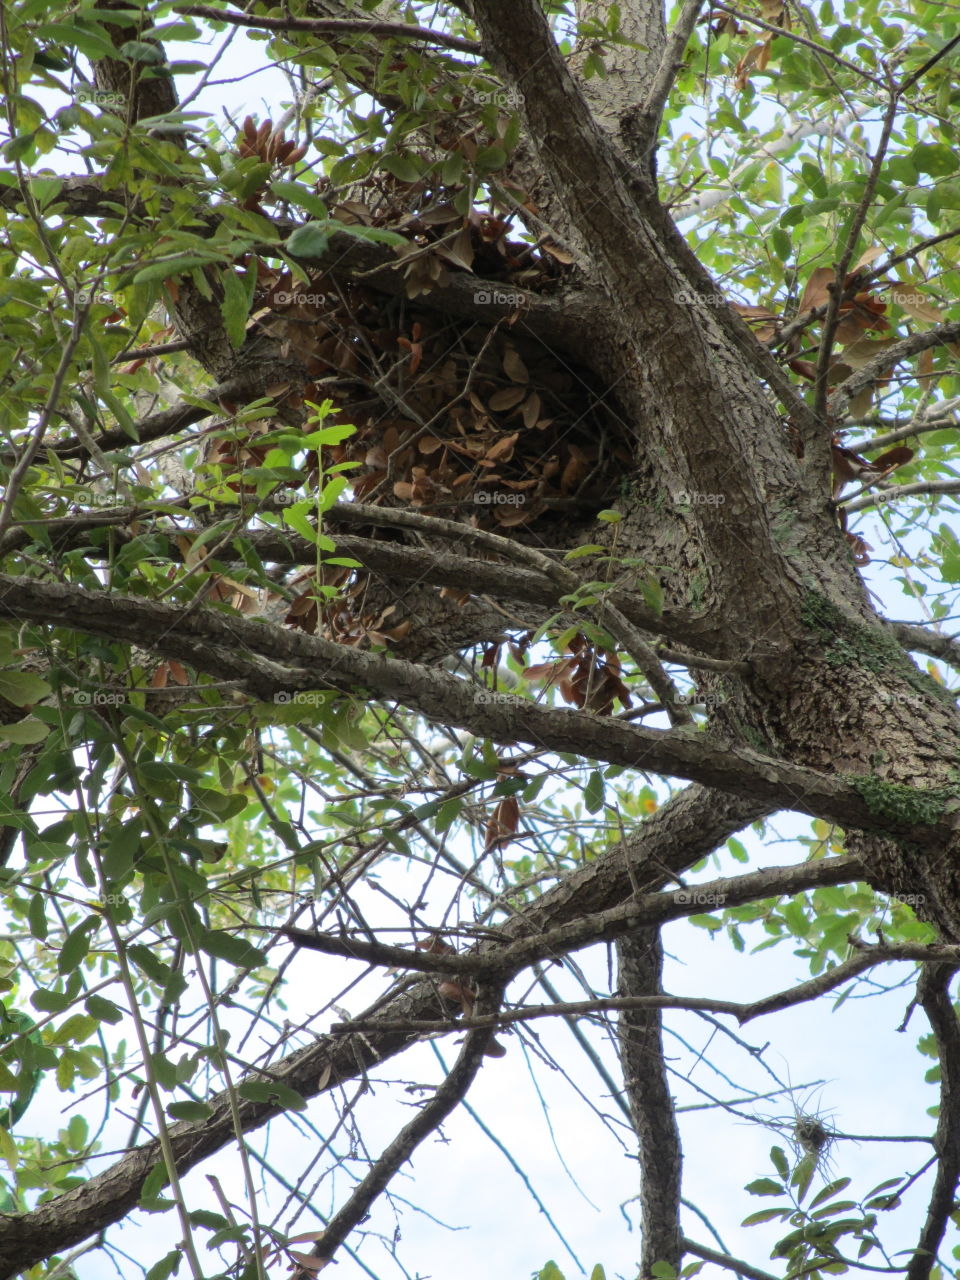 Squirrel's nest in an oak tree